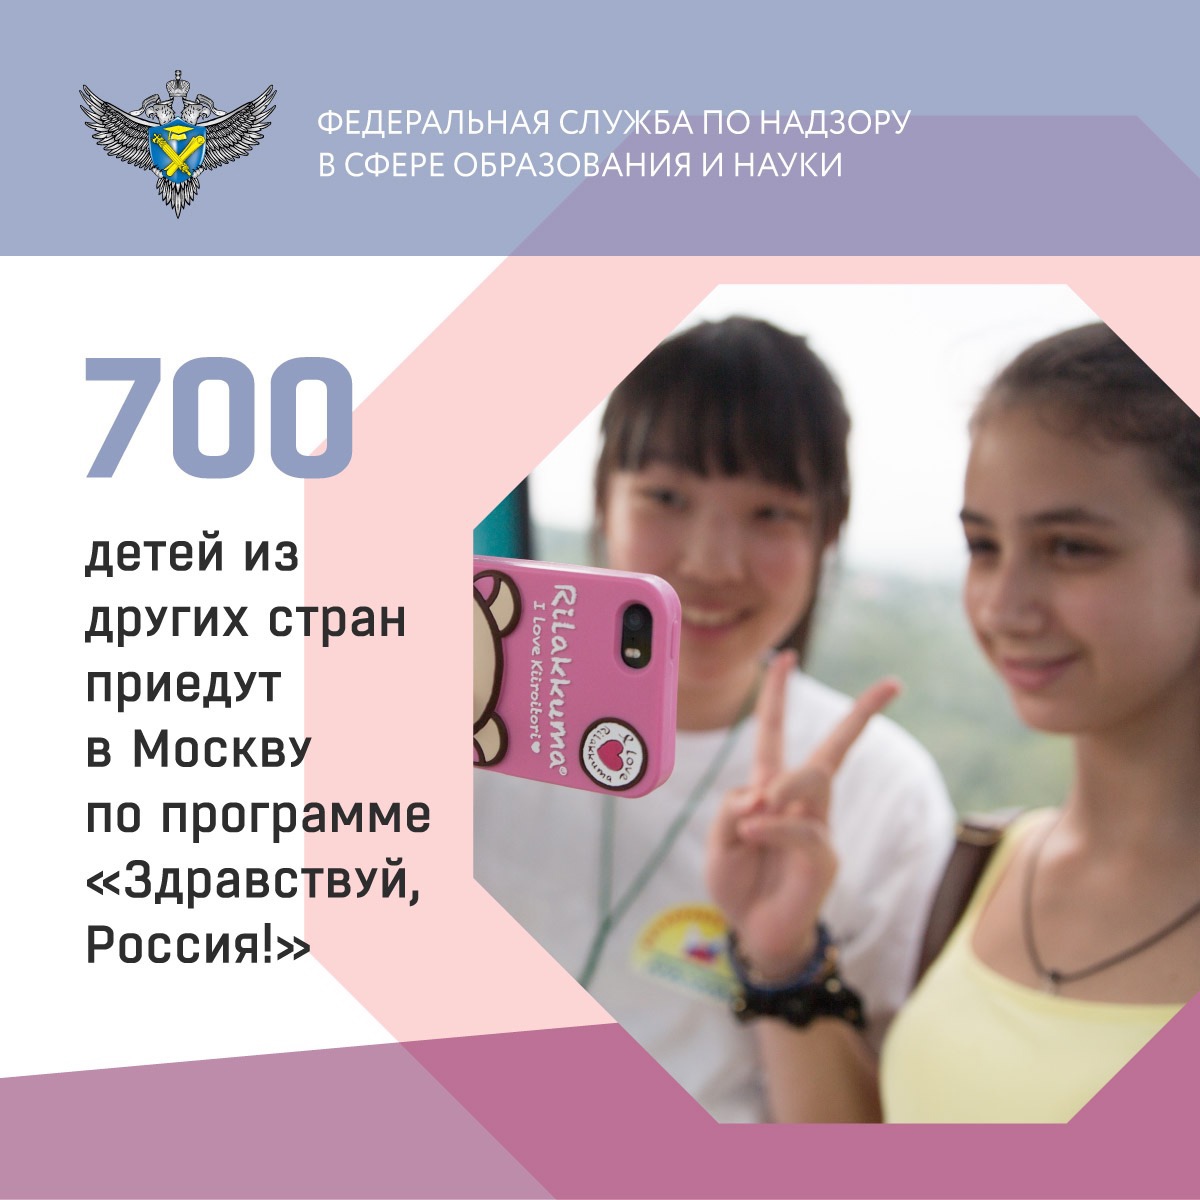 700 детей других стран приедут в Москву по программе «Здравствуй, Россия»